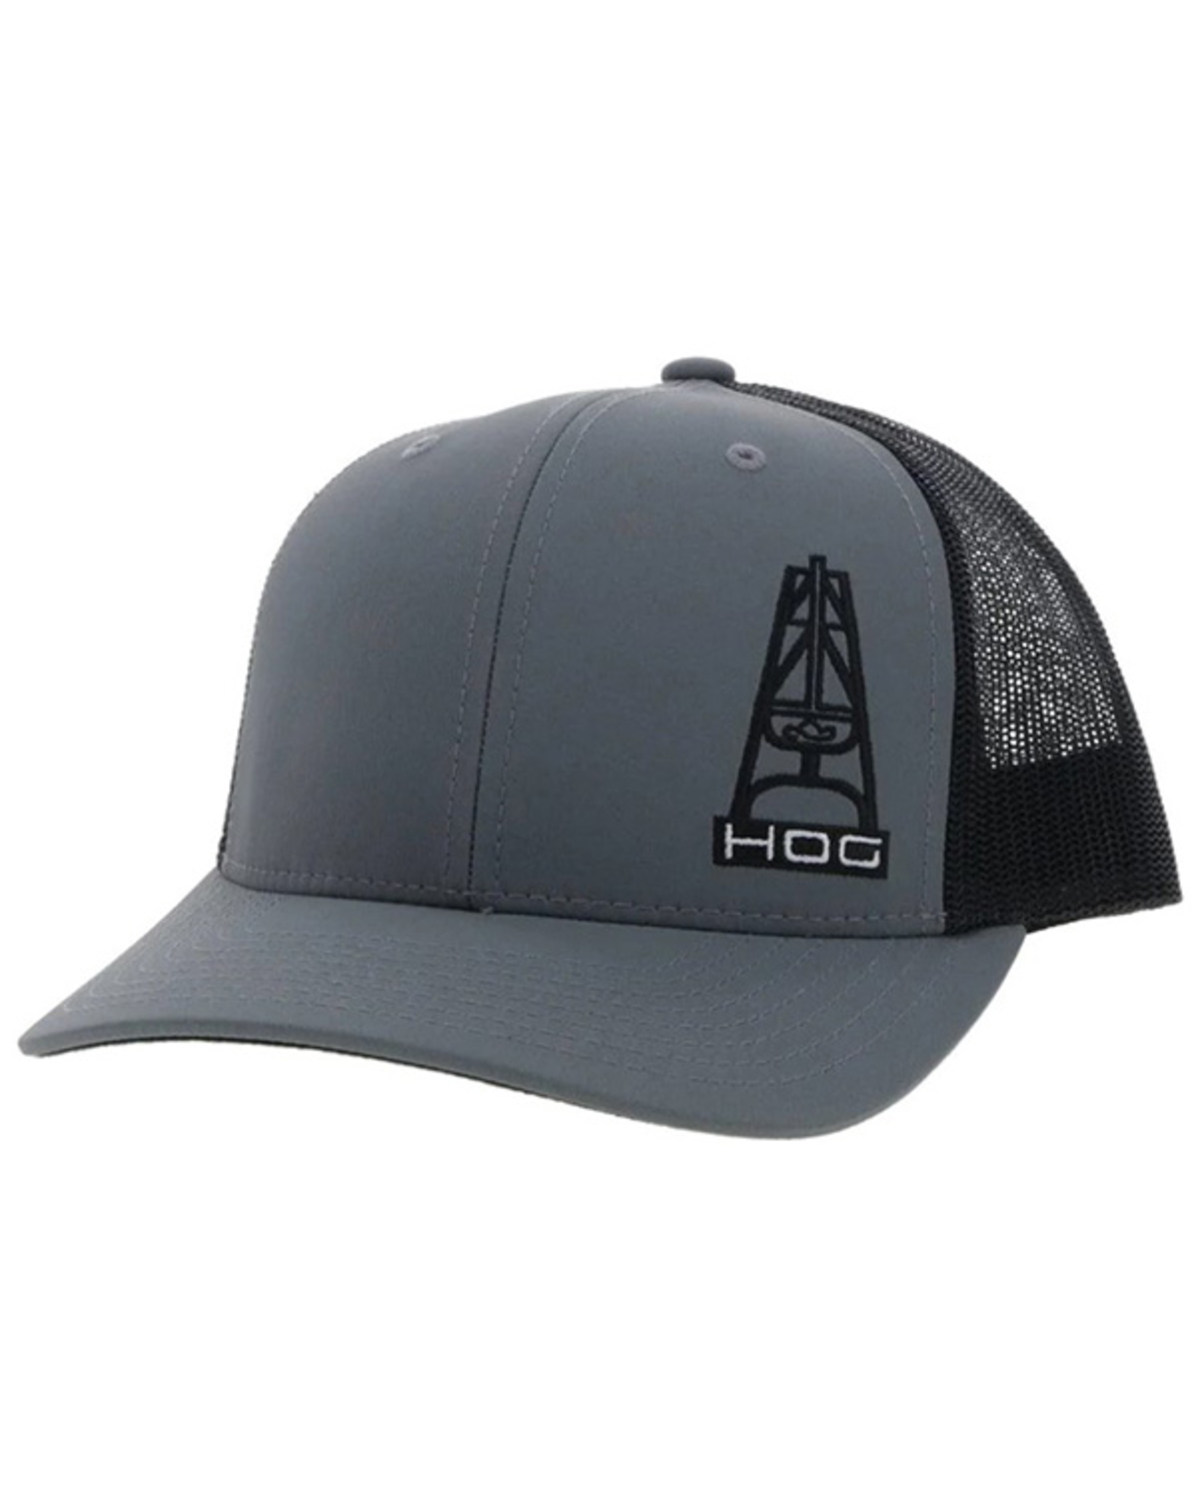 Hooey Men's Hog Logo Trucker Cap